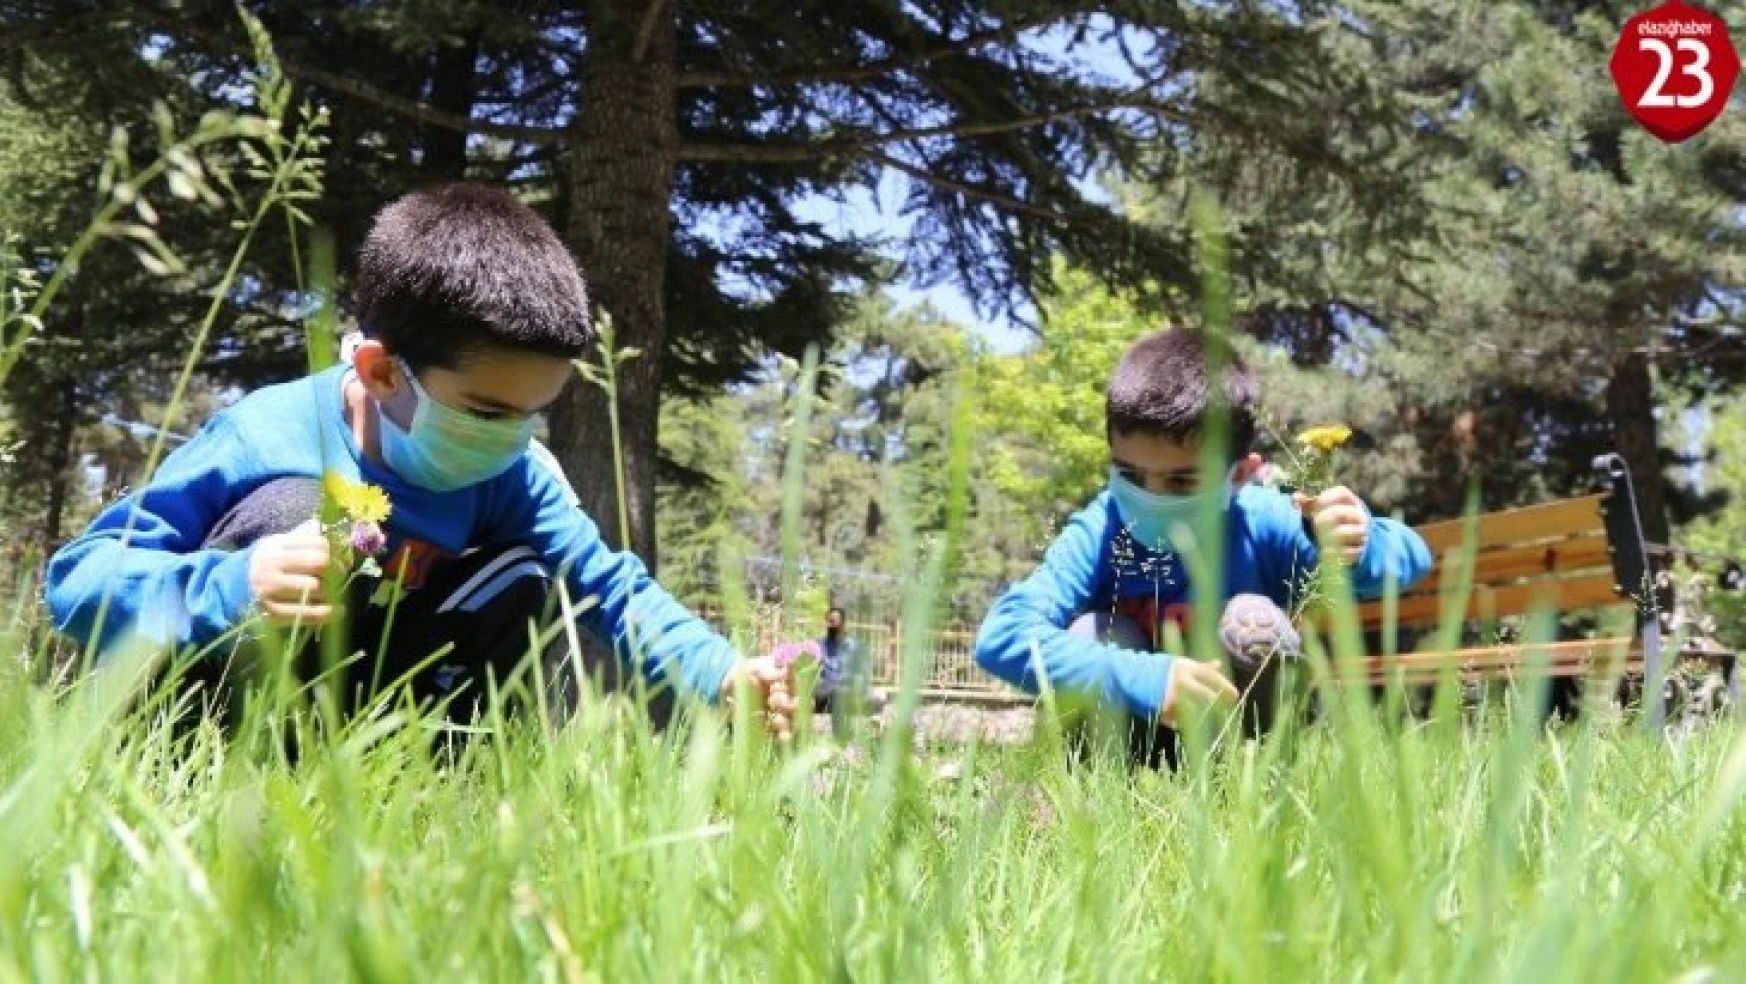 Elazığ'da 5 yaşındaki ikizler 4 saatlik izinde doyasıya eğlendi